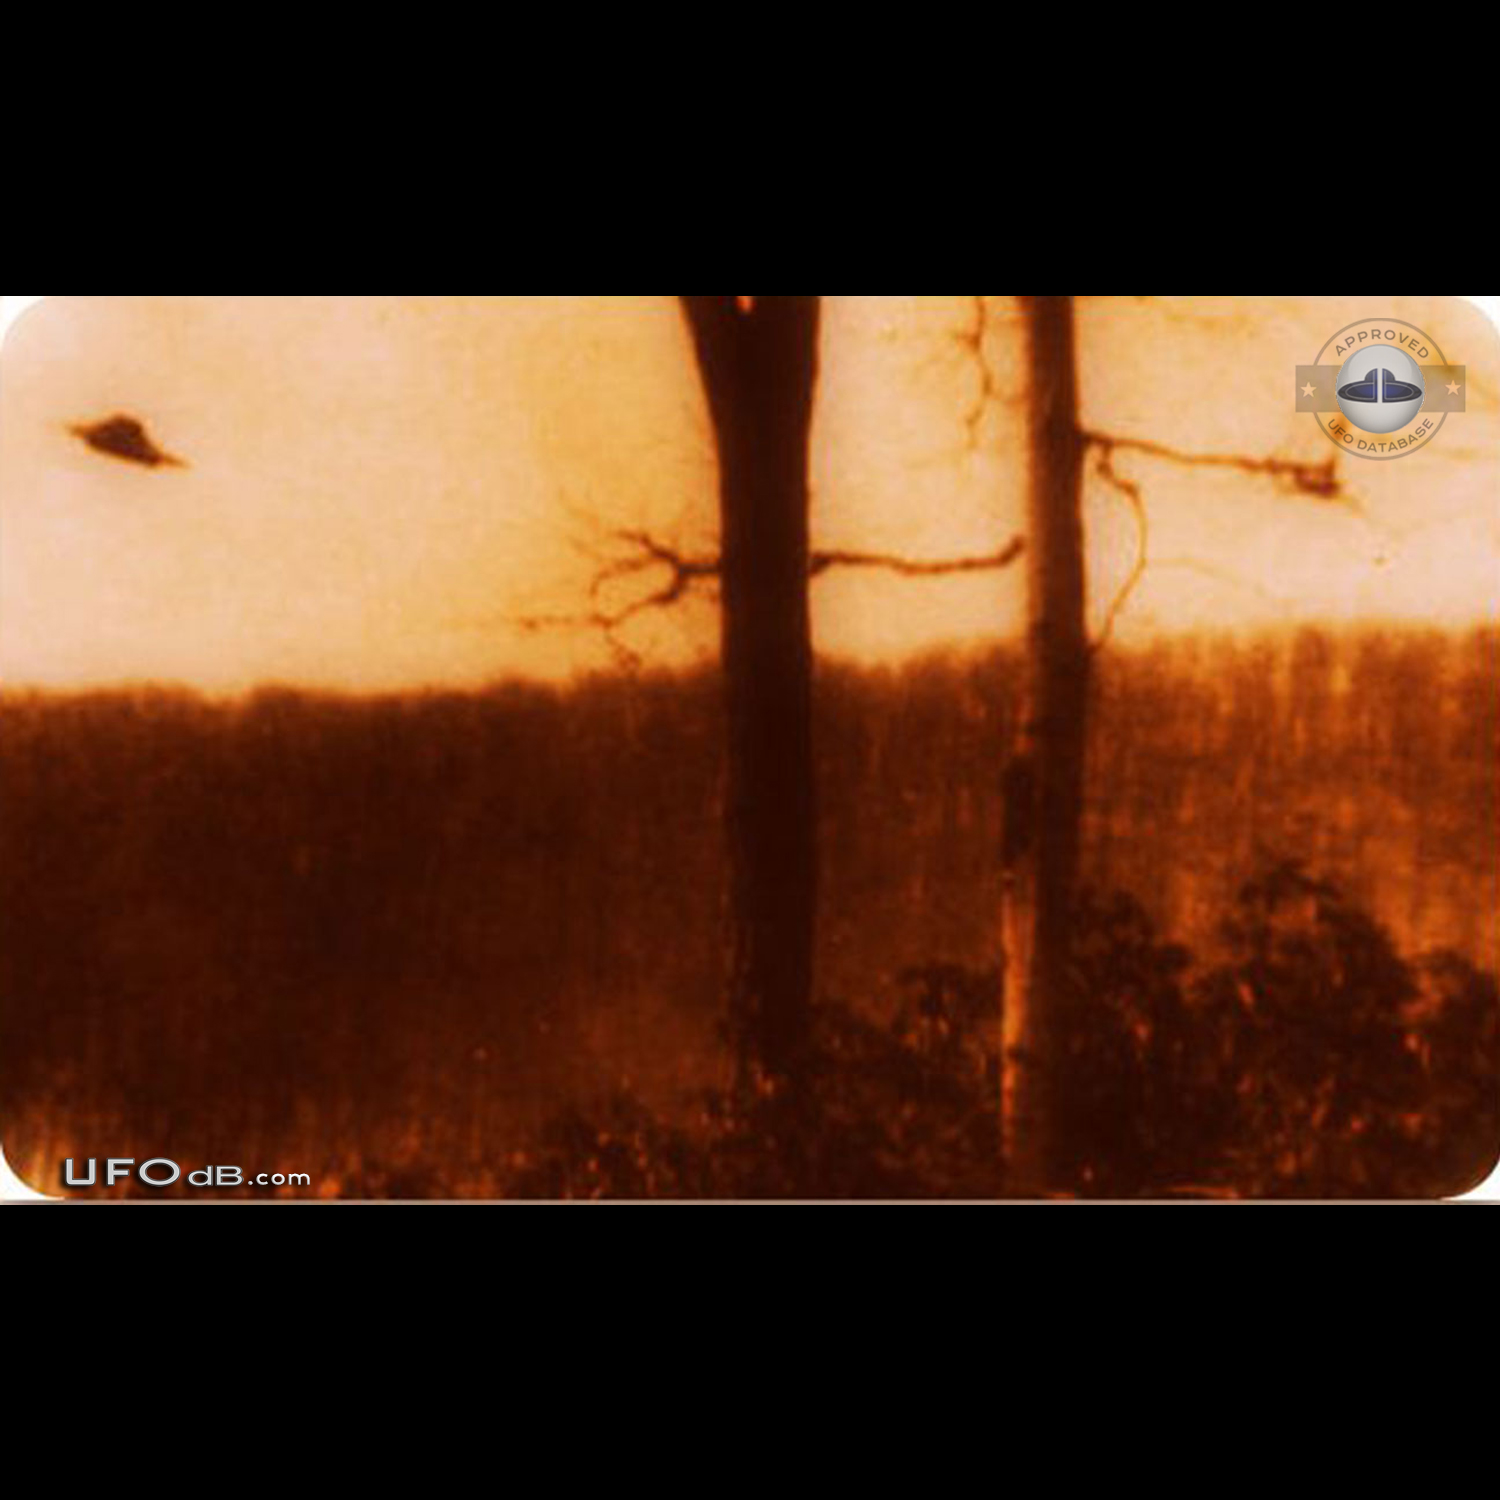 Old 1966 UFO picture taken near Lake Tiorati, Orange County New York UFO Picture #633-1